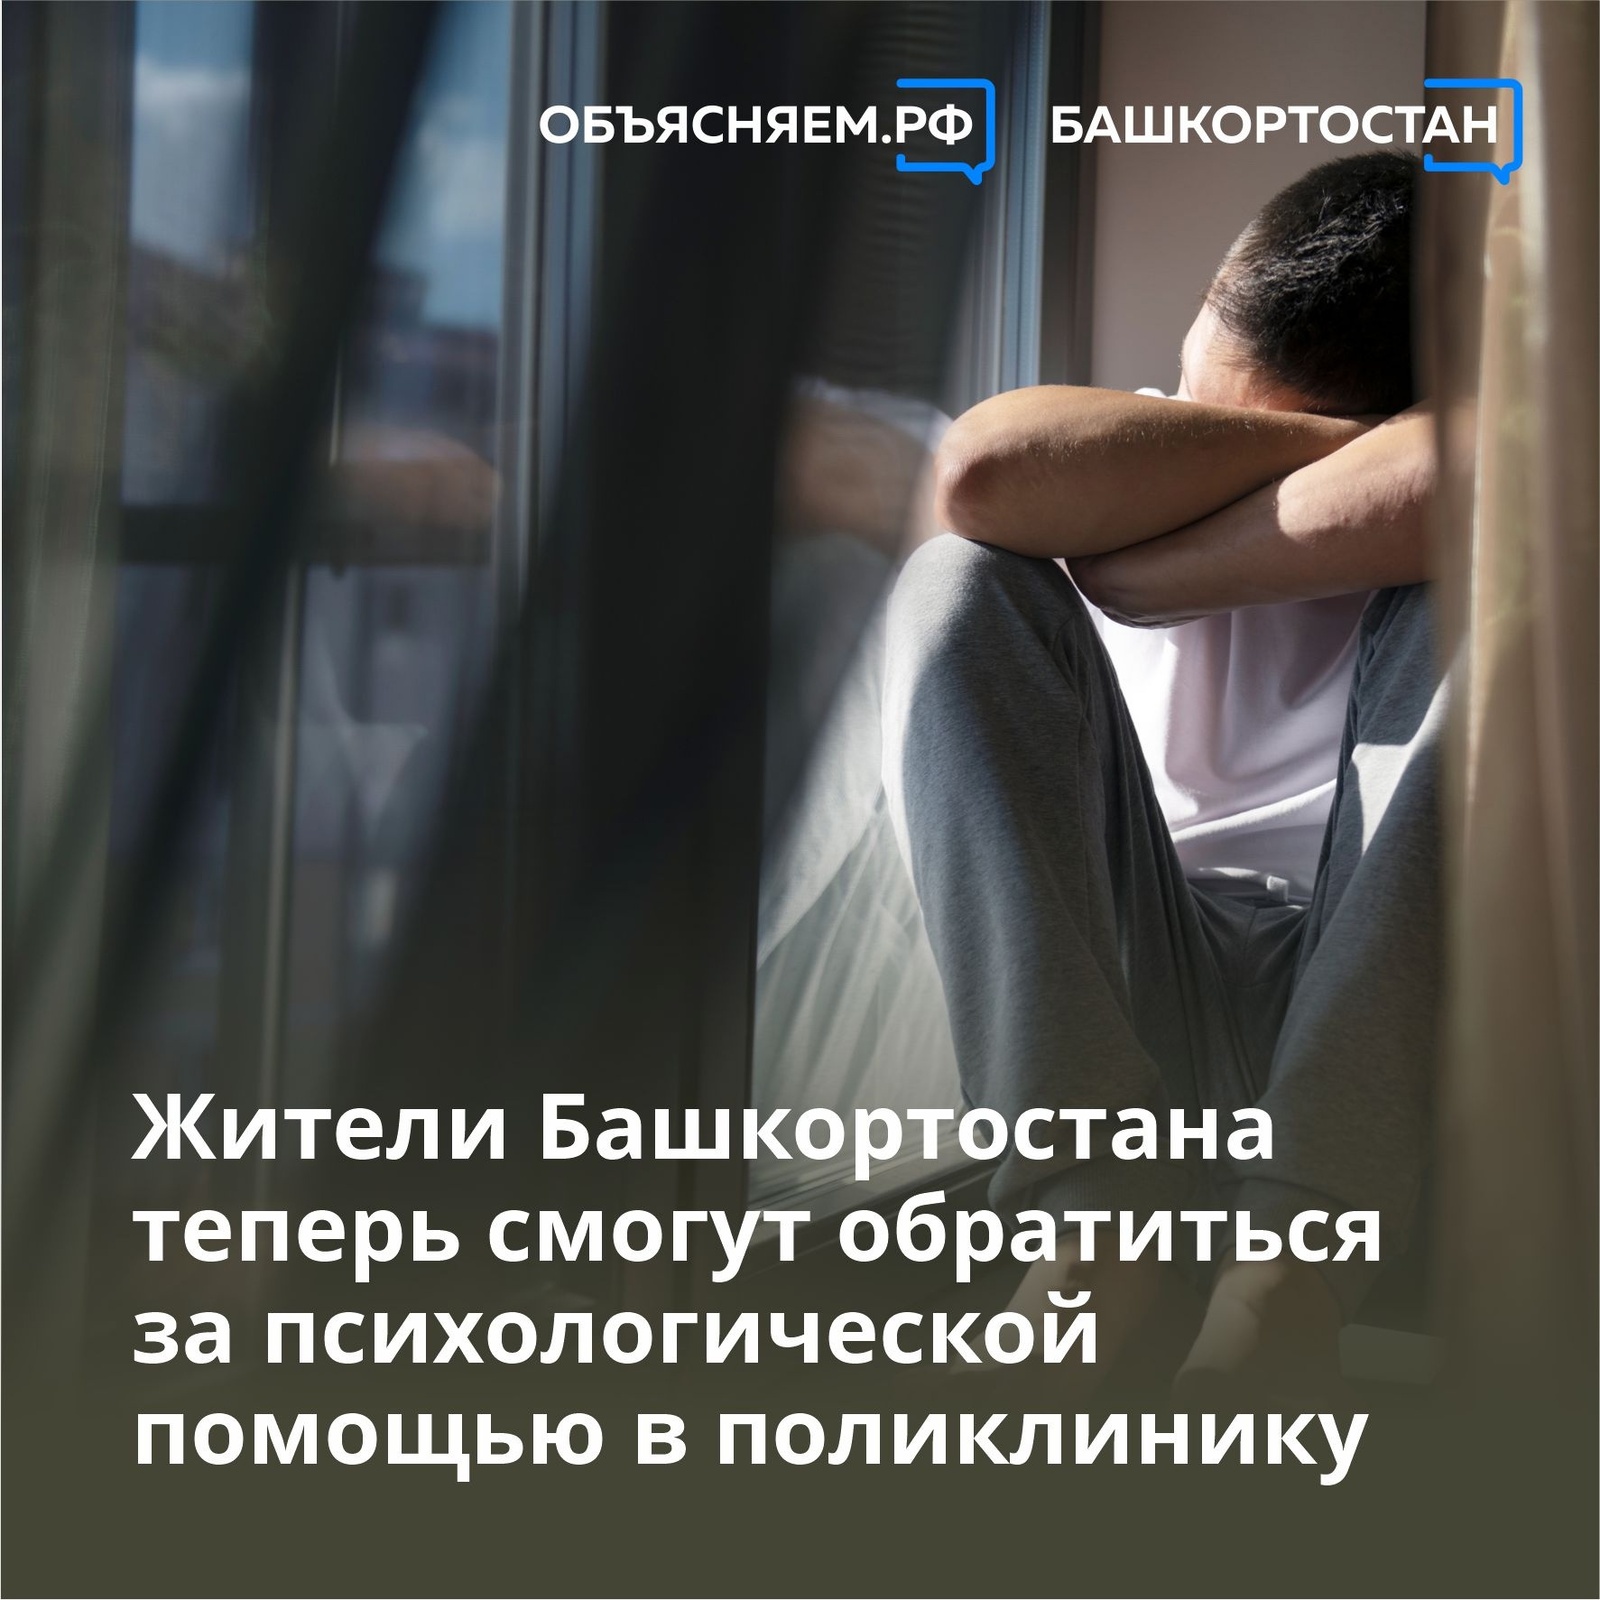 Жители Башкортостана теперь смогут обратиться за психологической помощью в поликлинику